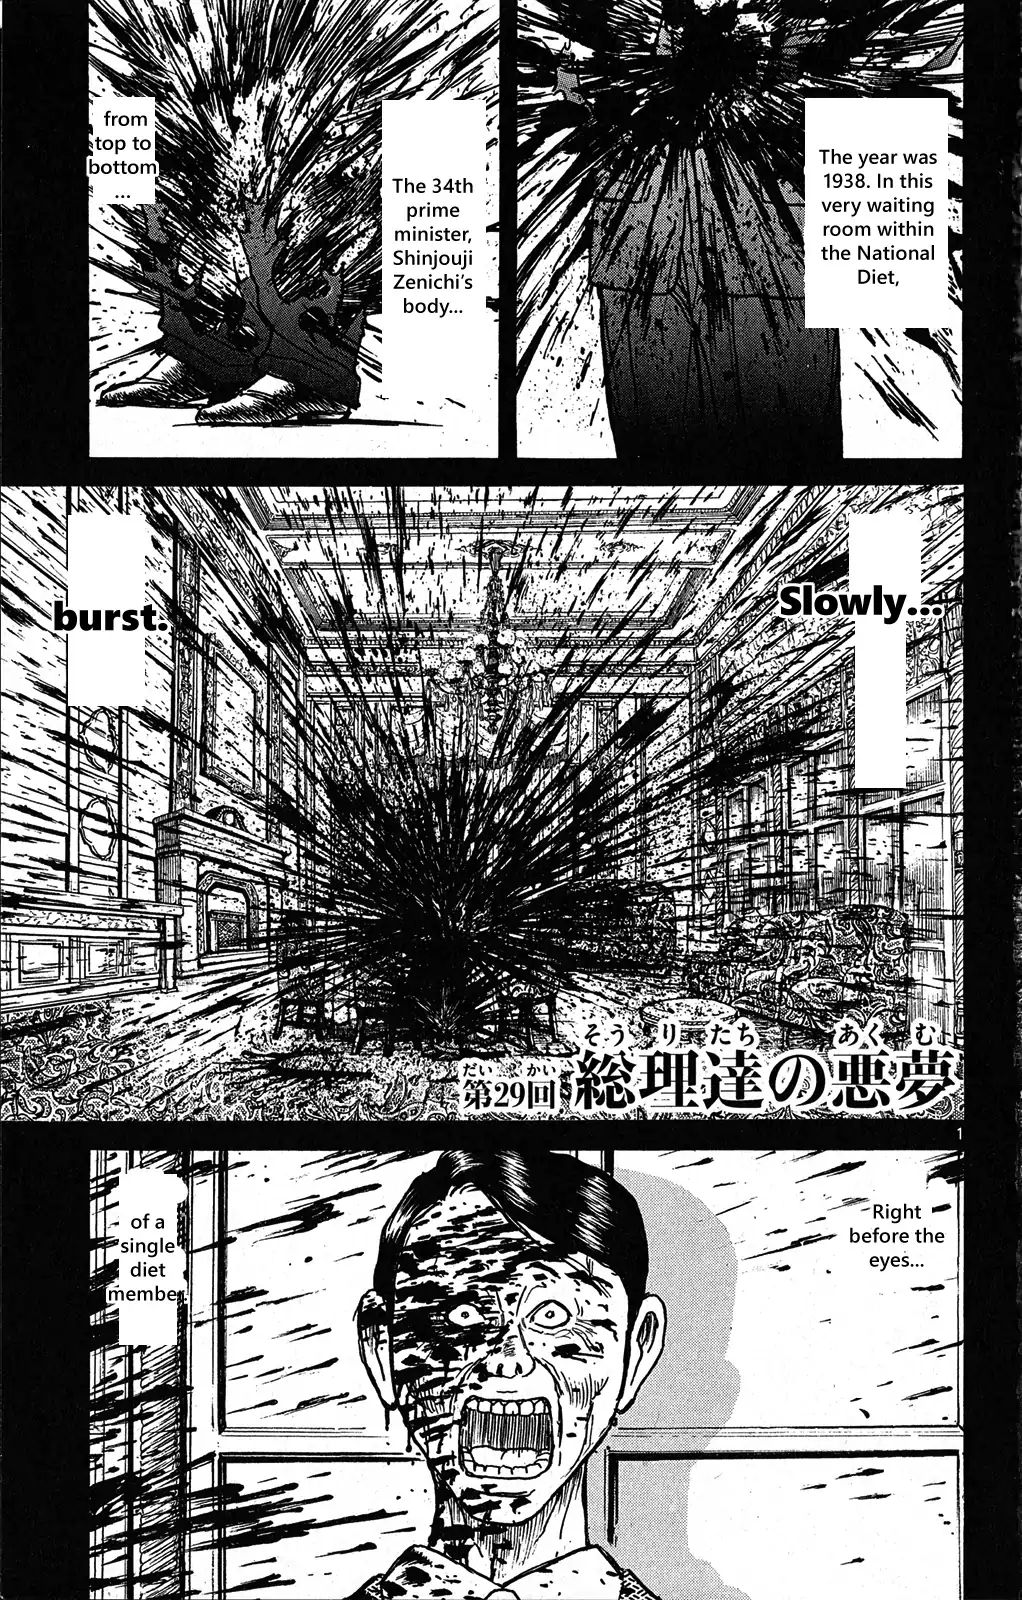 Souboutei Kowasu Beshi - Page 2